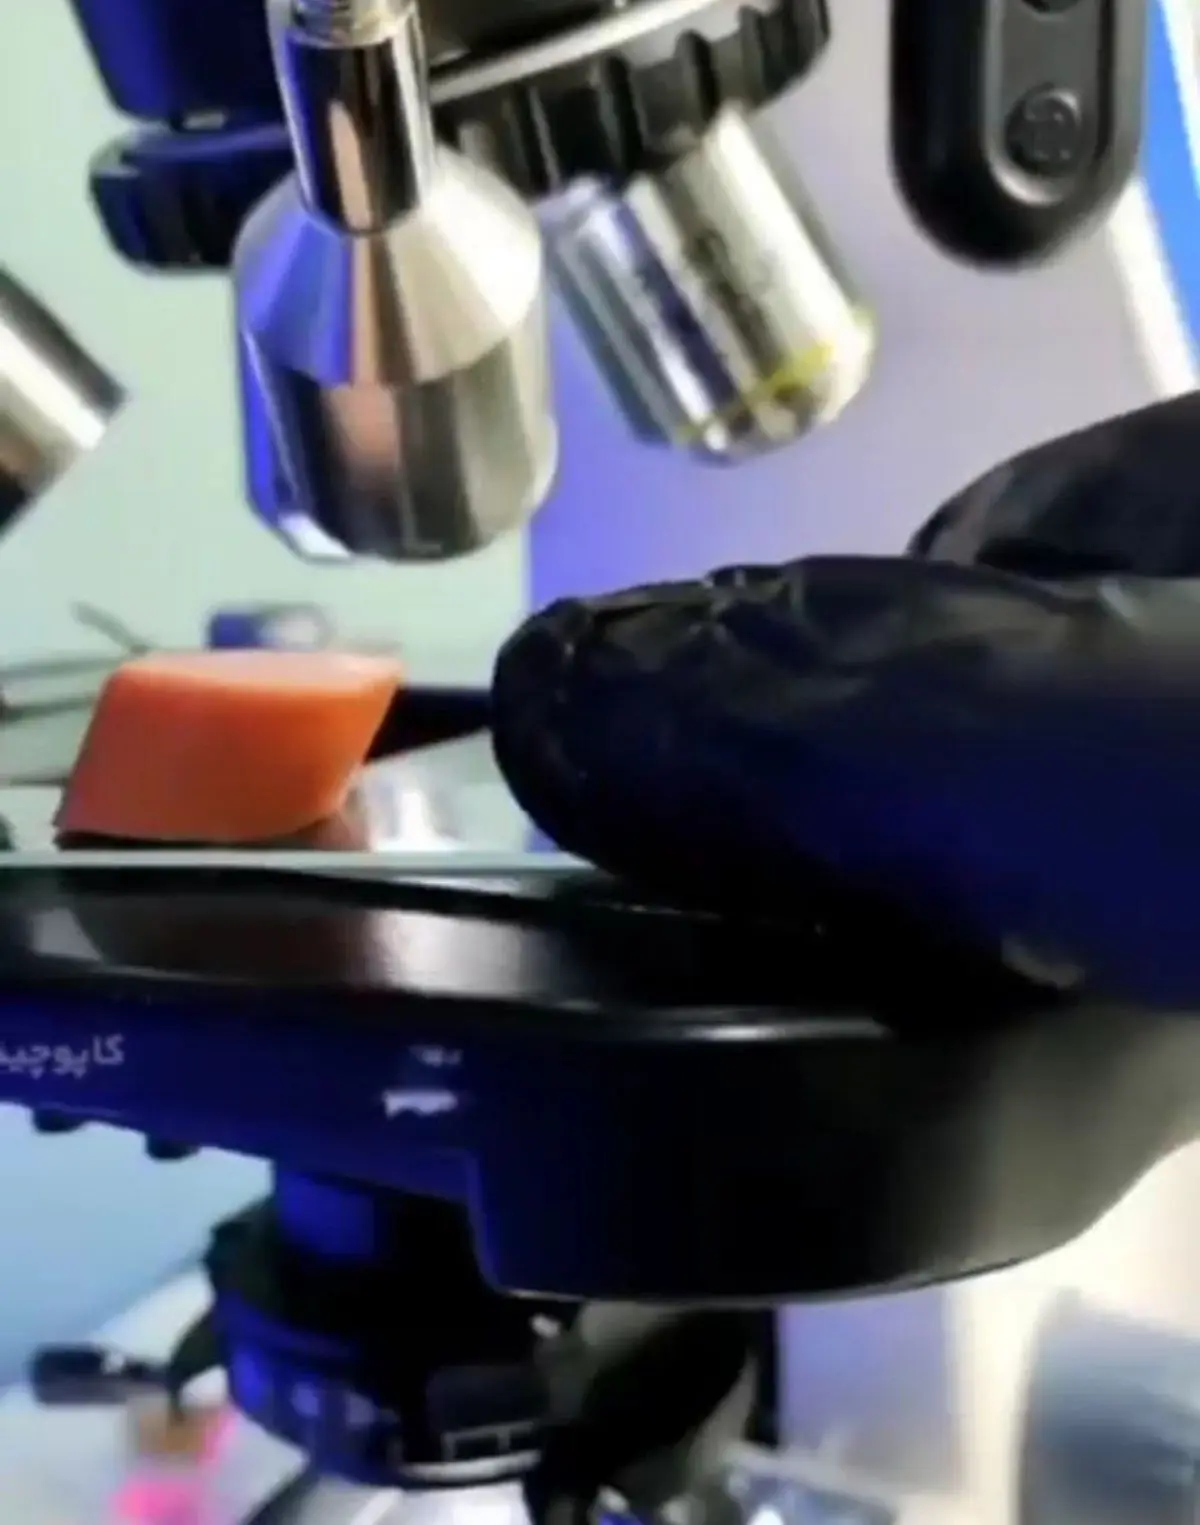 سوسیس و کالباس را زیر میکروسکوپ تماشا کنید+ویدئو 